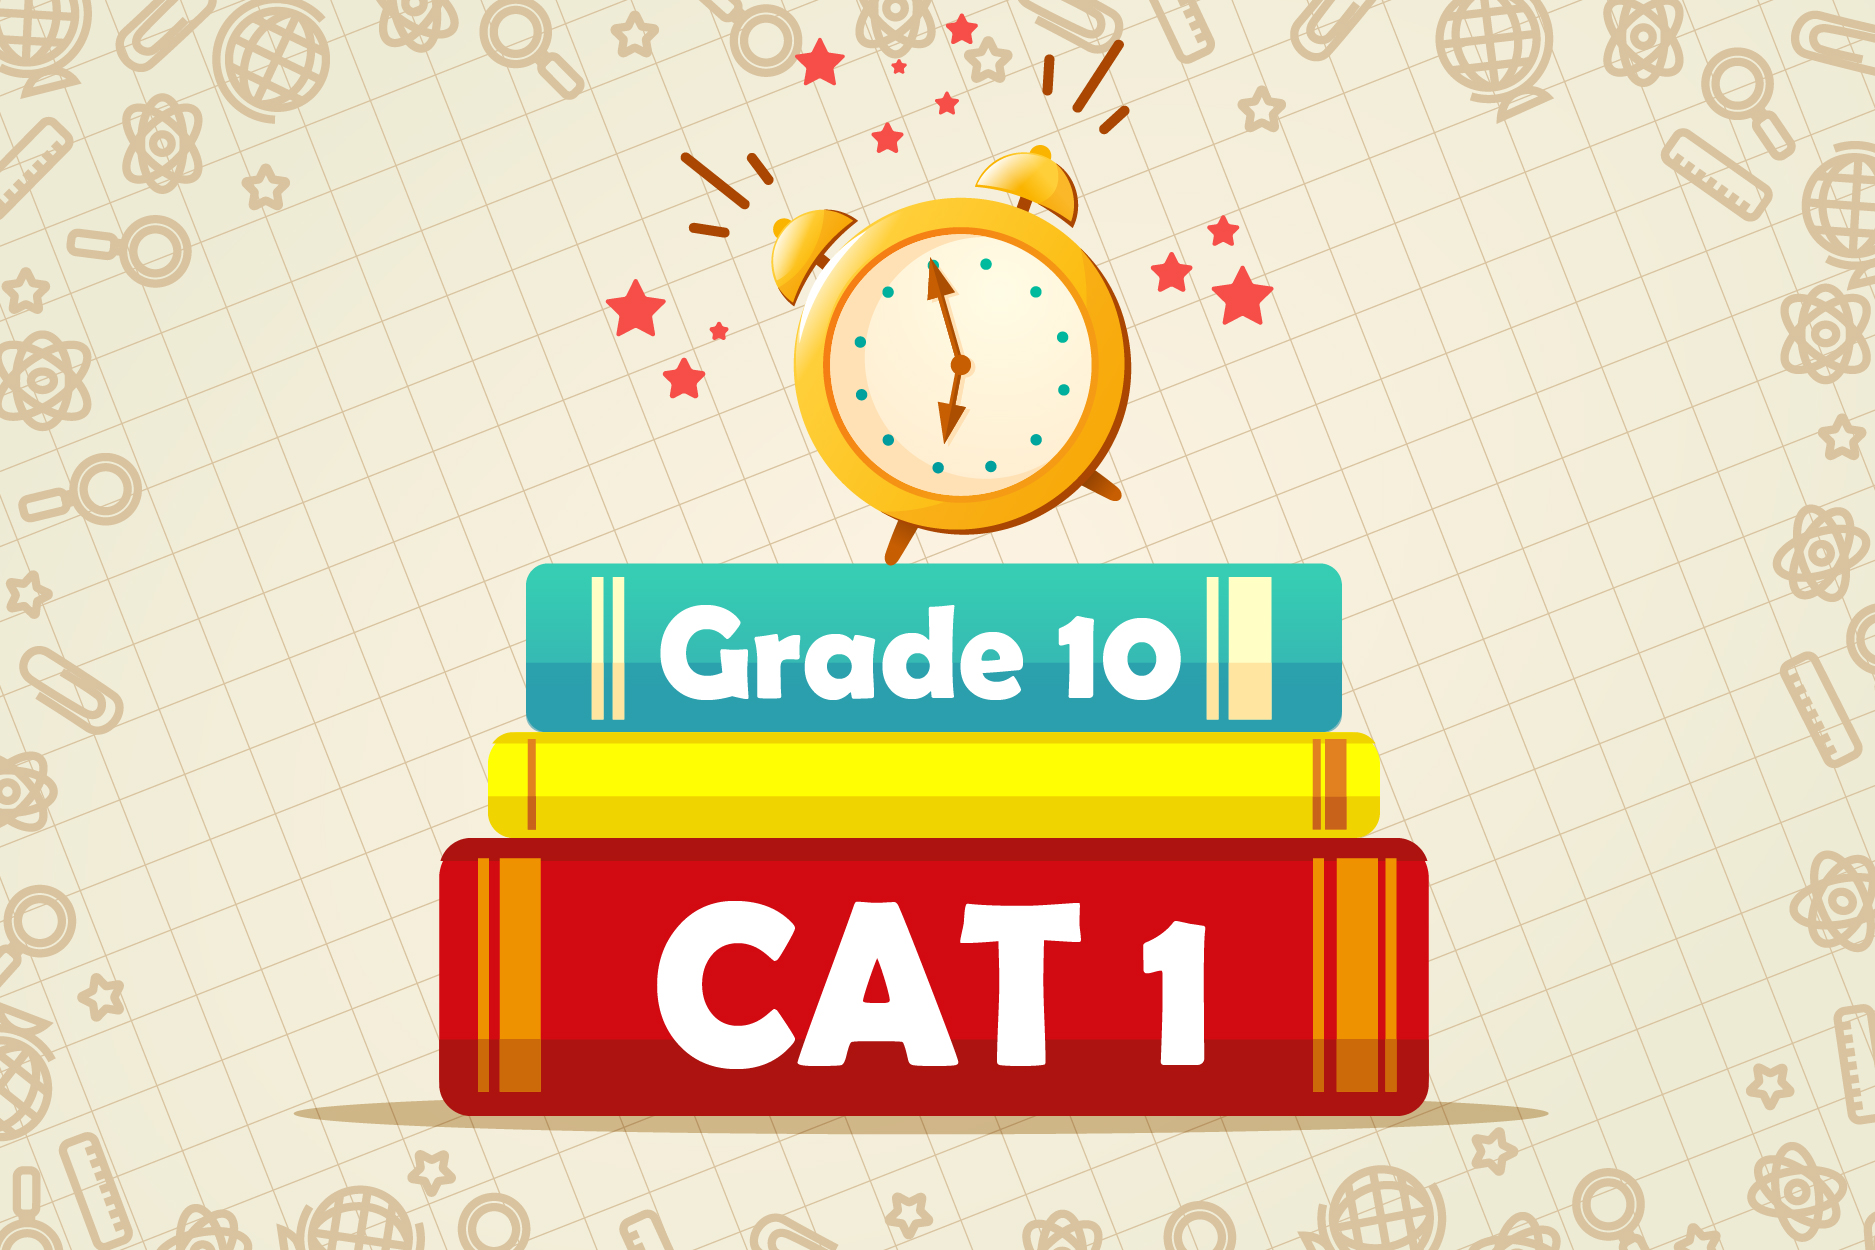 Grade 10 CAT 1